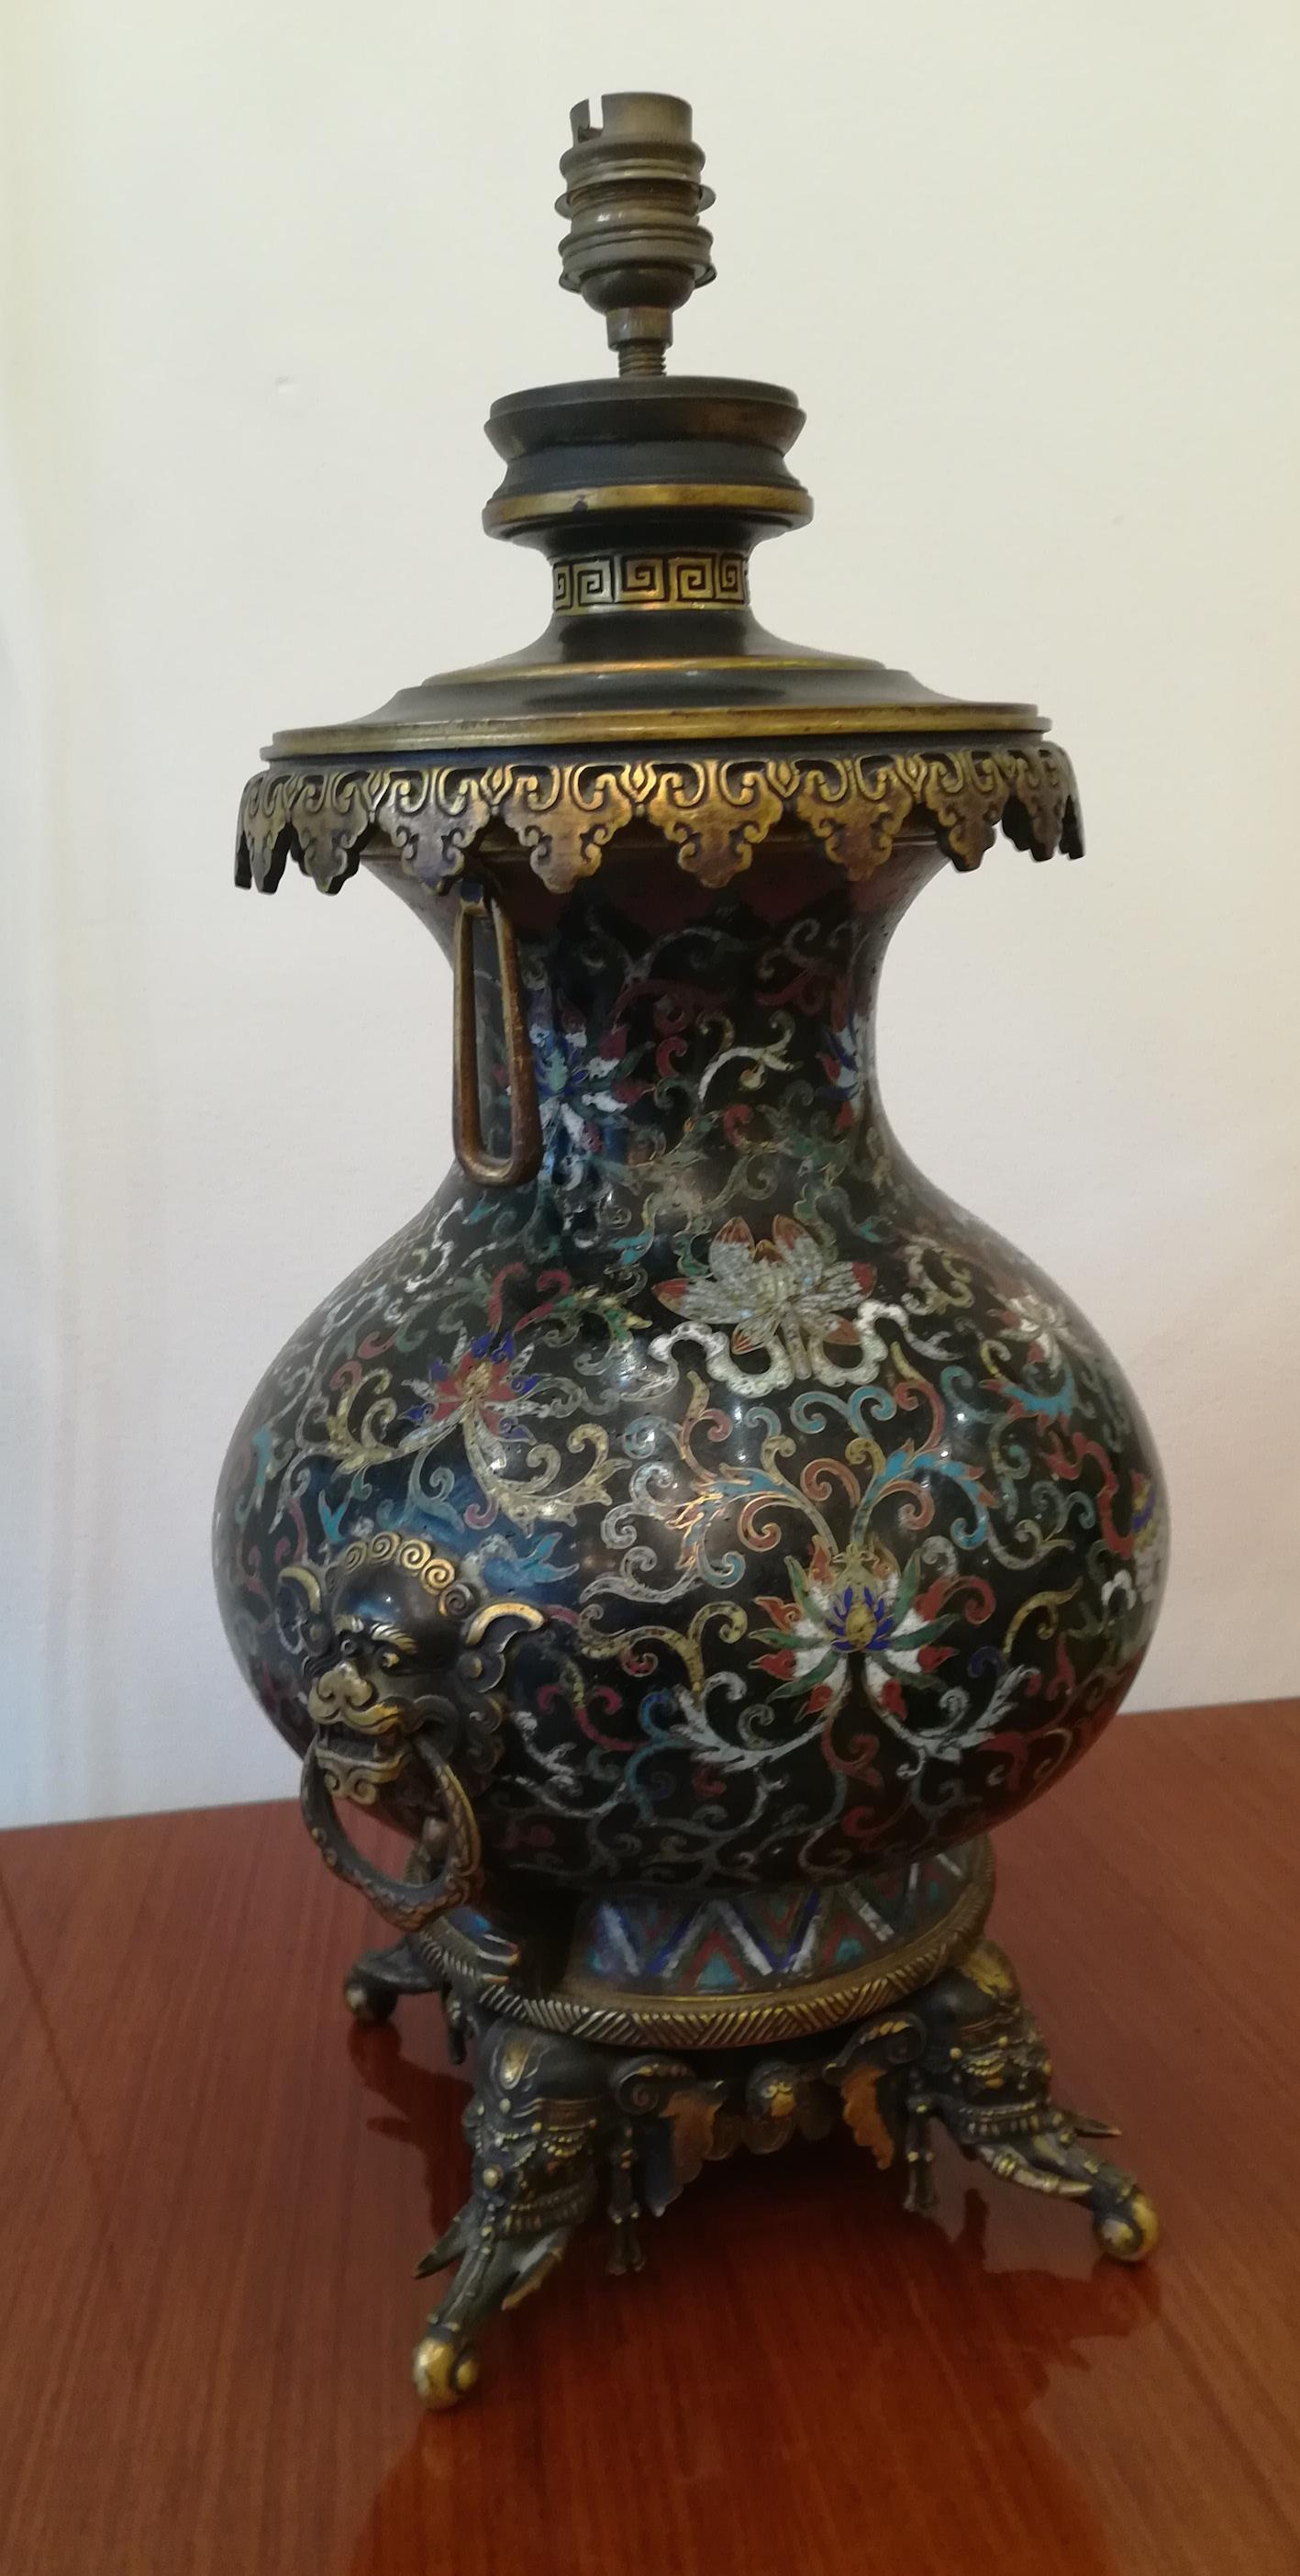 Lampe de forme balustre réalisée à partir d'un vase chinois en émail cloisonné fin XVIIIe-début XIXe siècle, c'est une réalisation française de la prestigieuse maison Barbedienne datant de la fin du XIXe siècle. Le travail, le décor et la sculpture